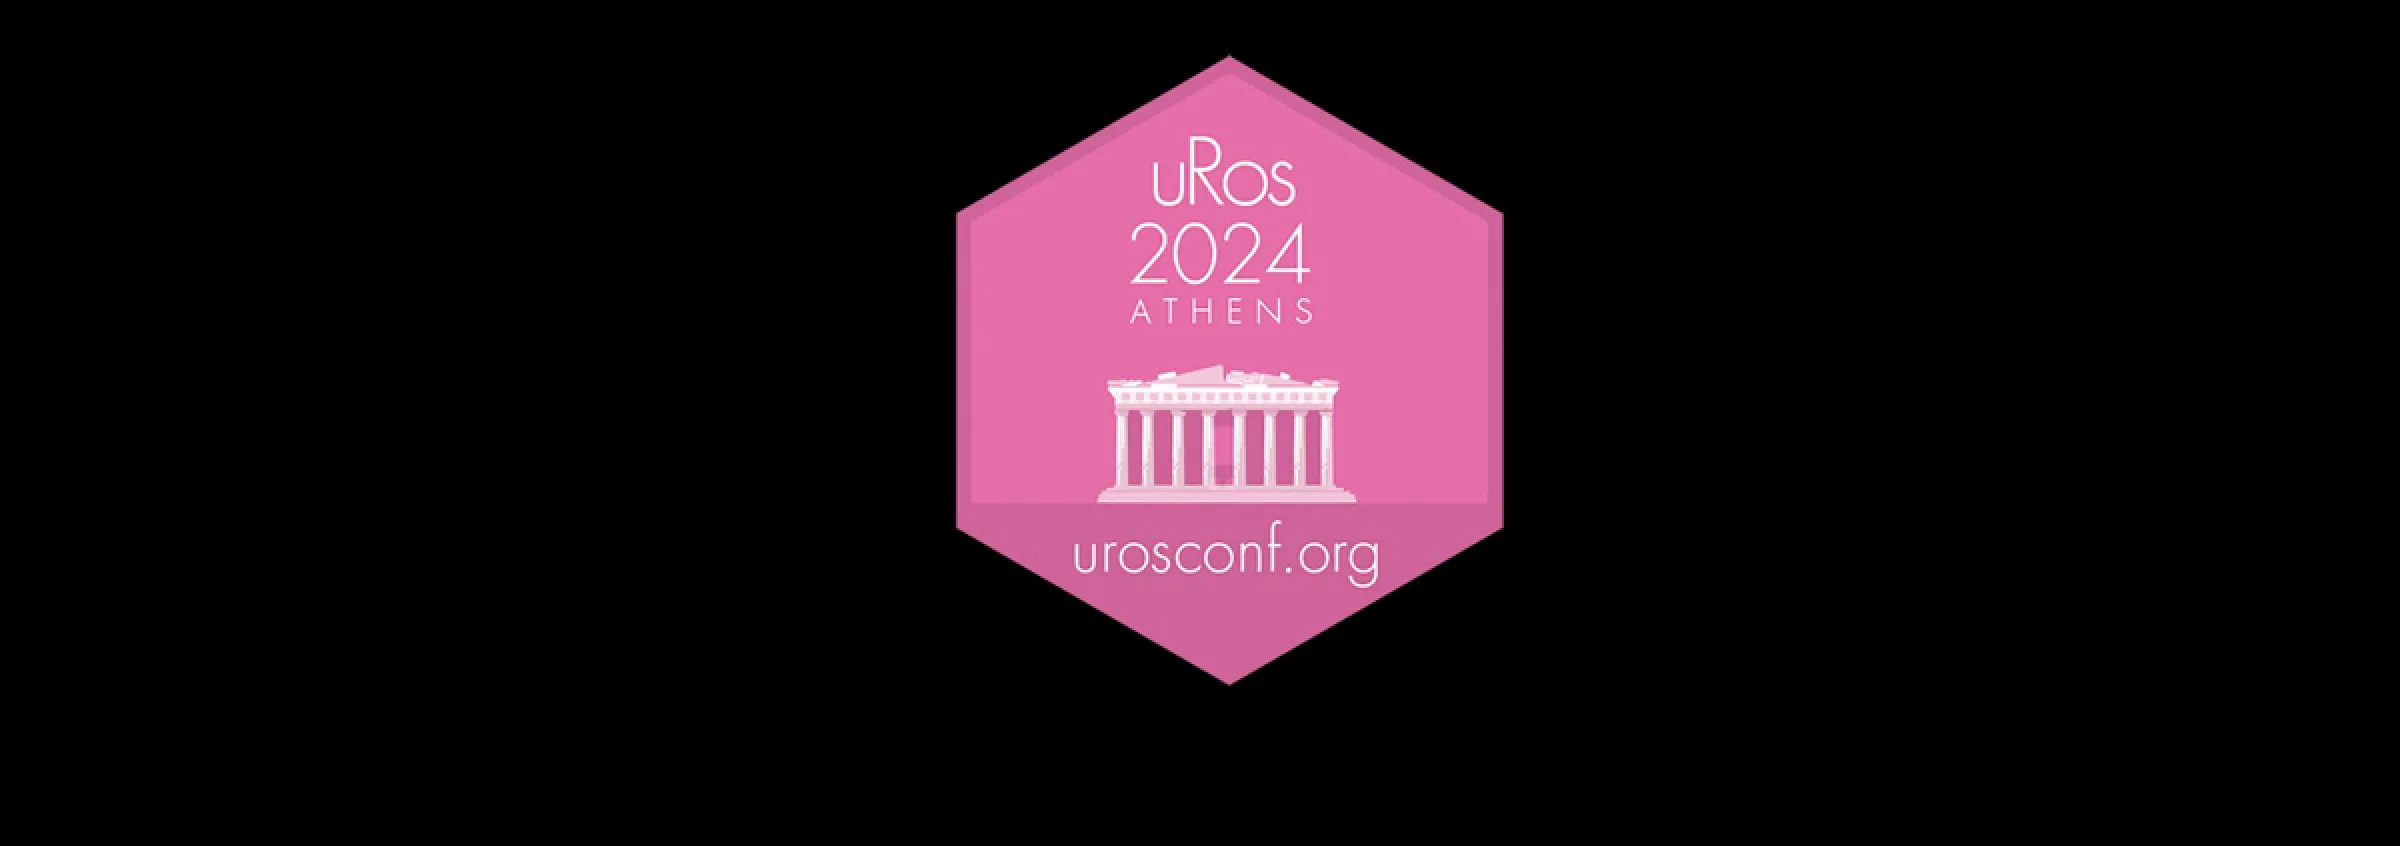 uRos 2024